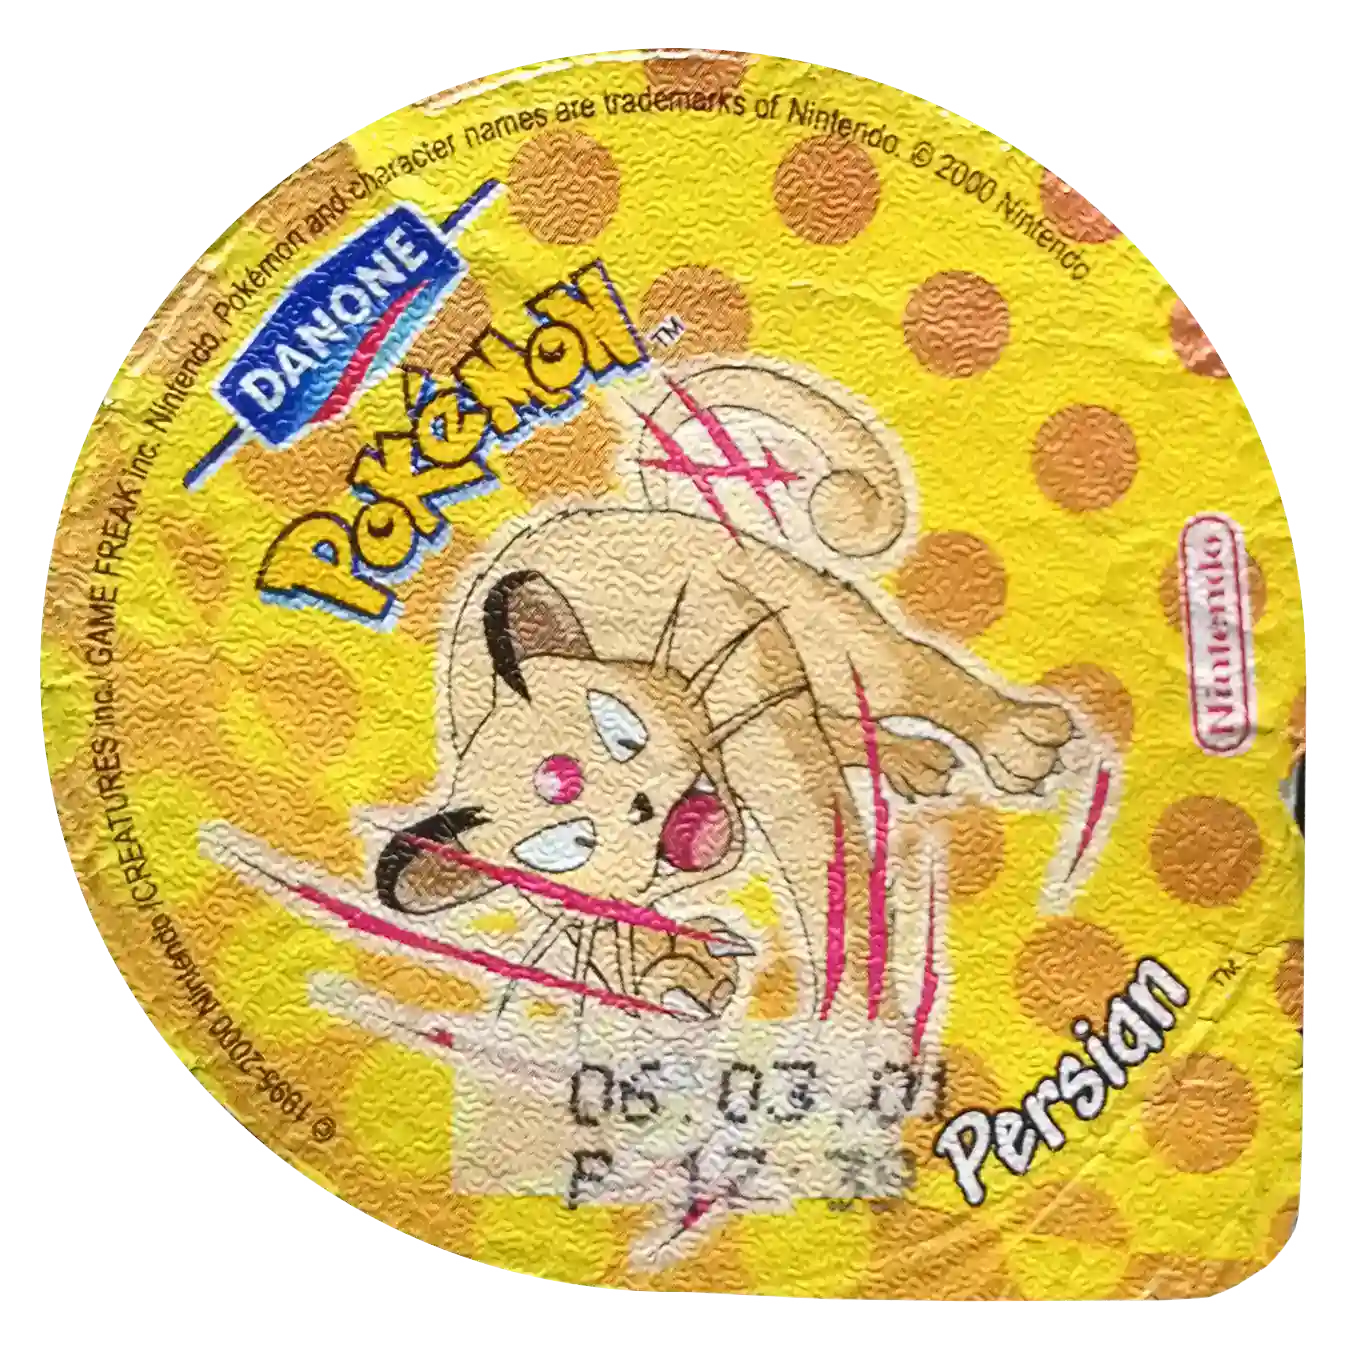 wieczka pokemon danone persian używa ataku scratch największy zbiór kolekcji pokemon tazo